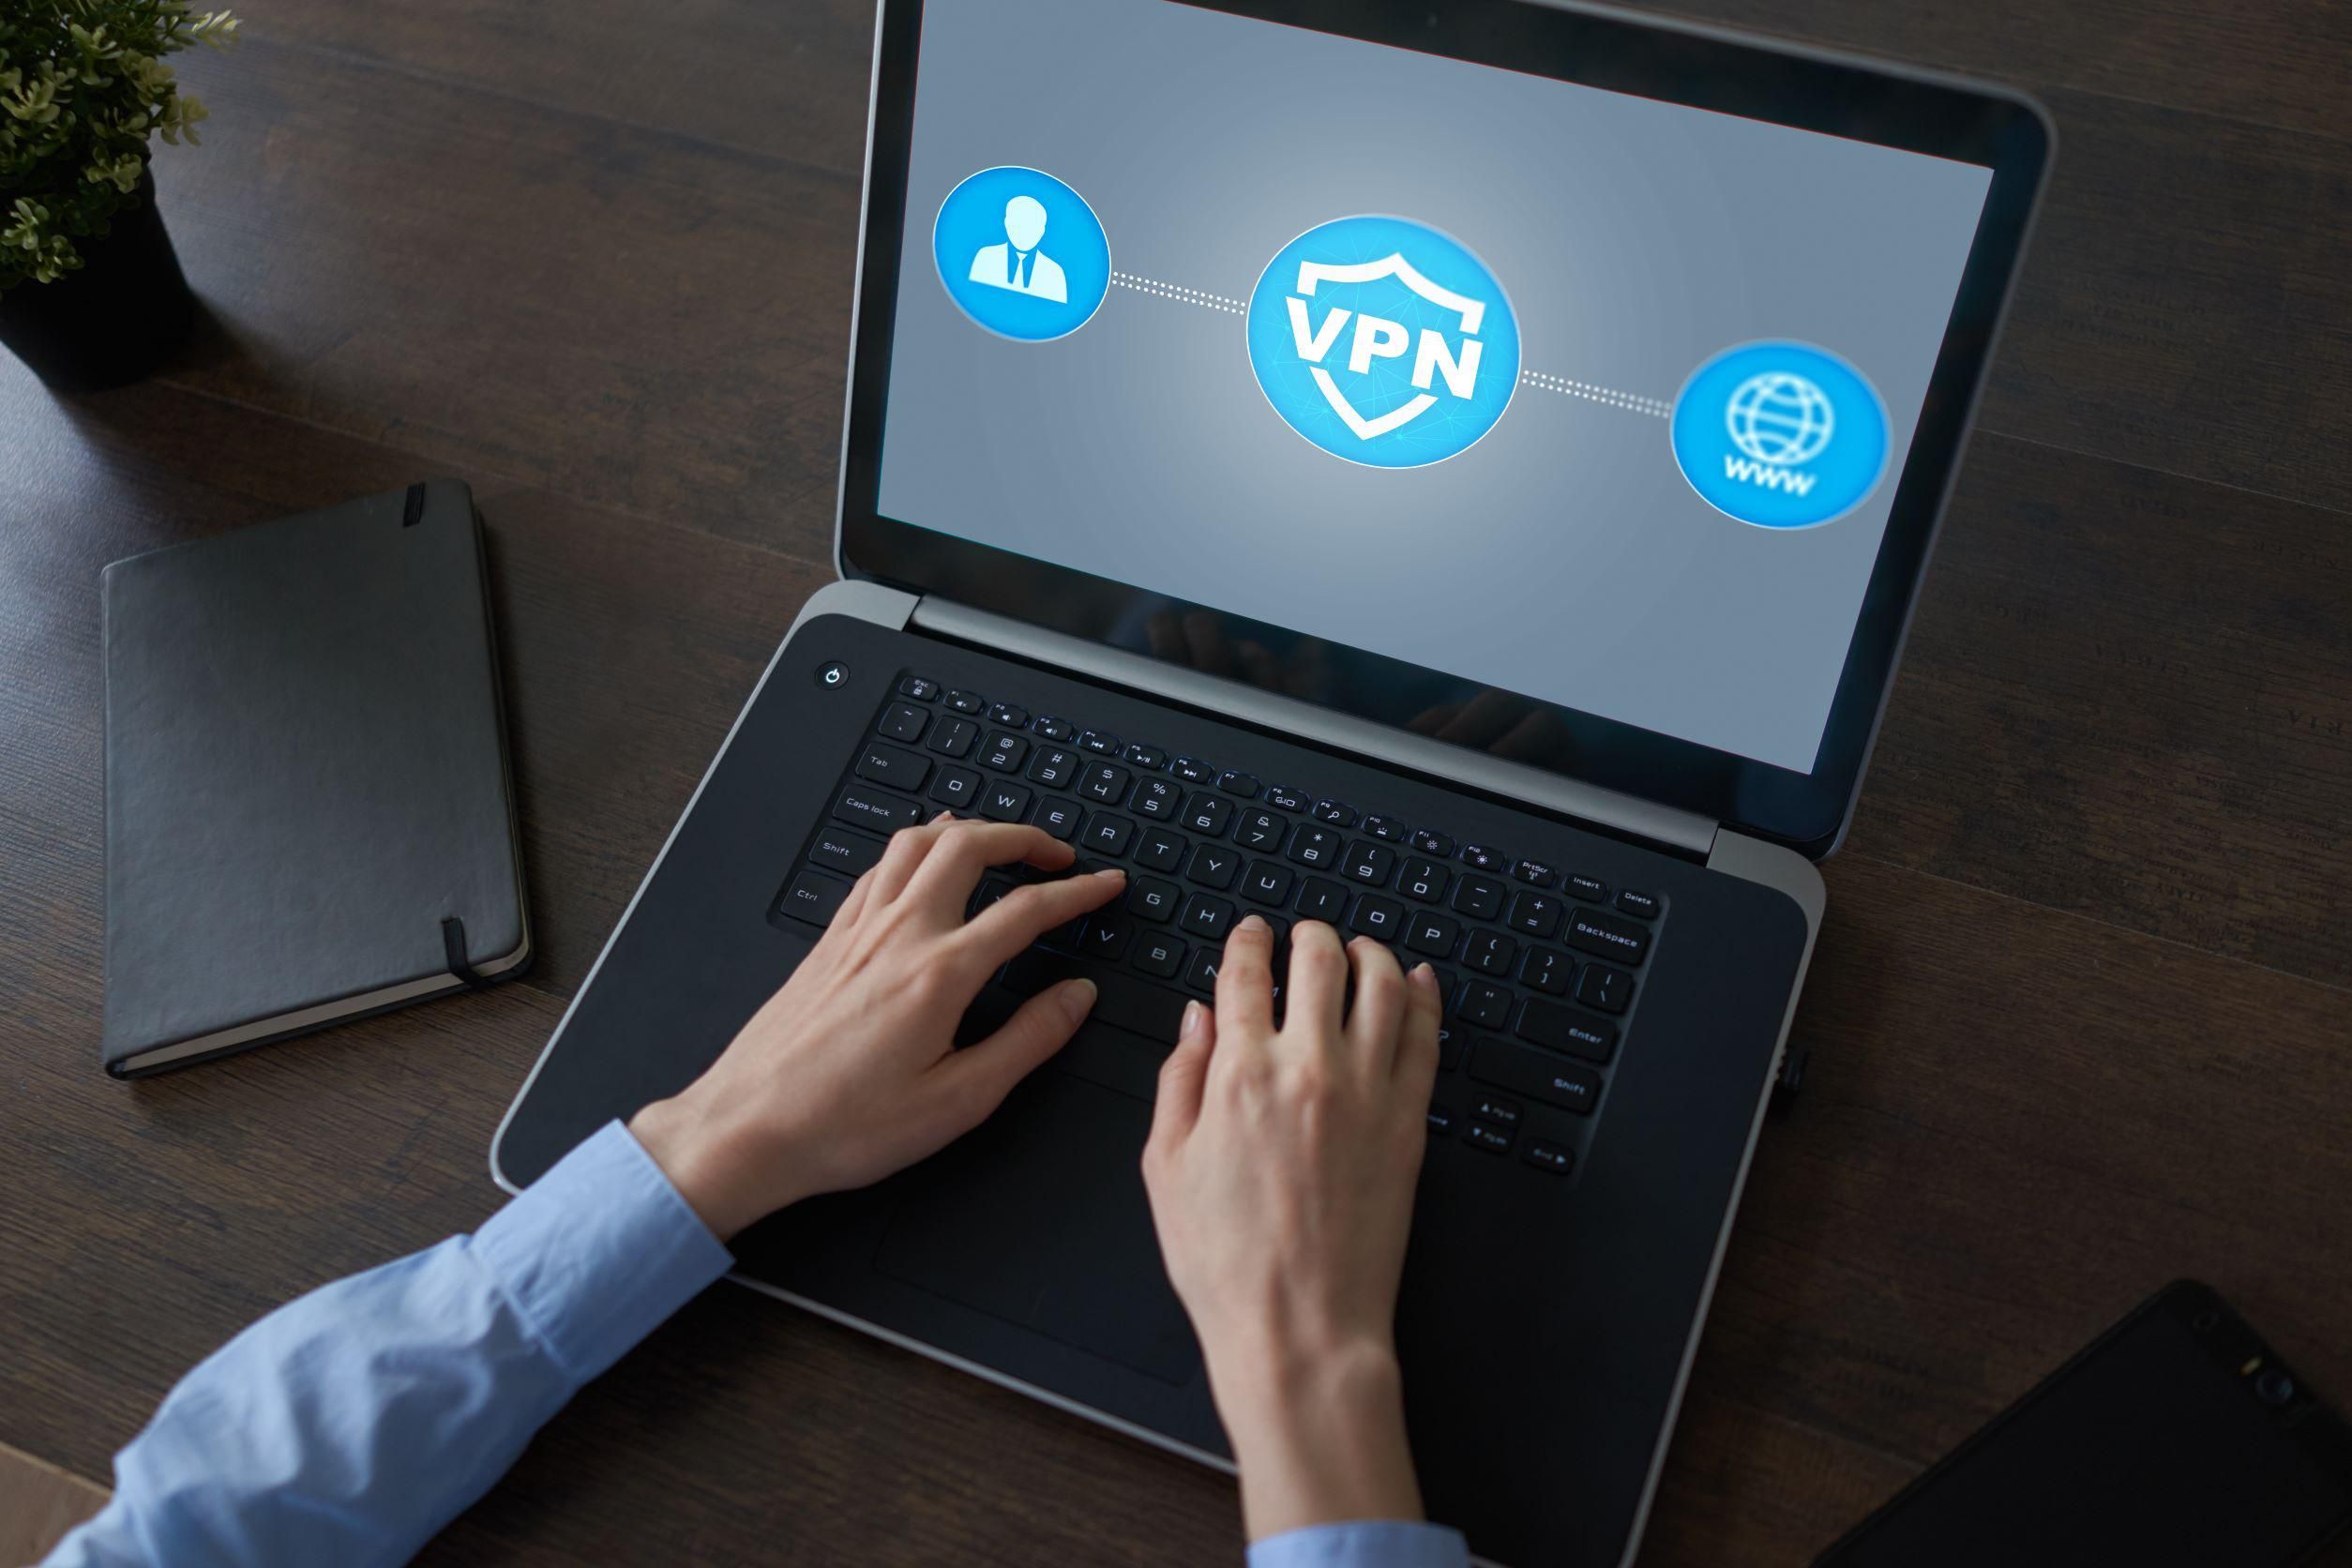 A VPN akkor lehet megoldás, ha az illetéktelen kíváncsiskodókat távol akarjuk tartani